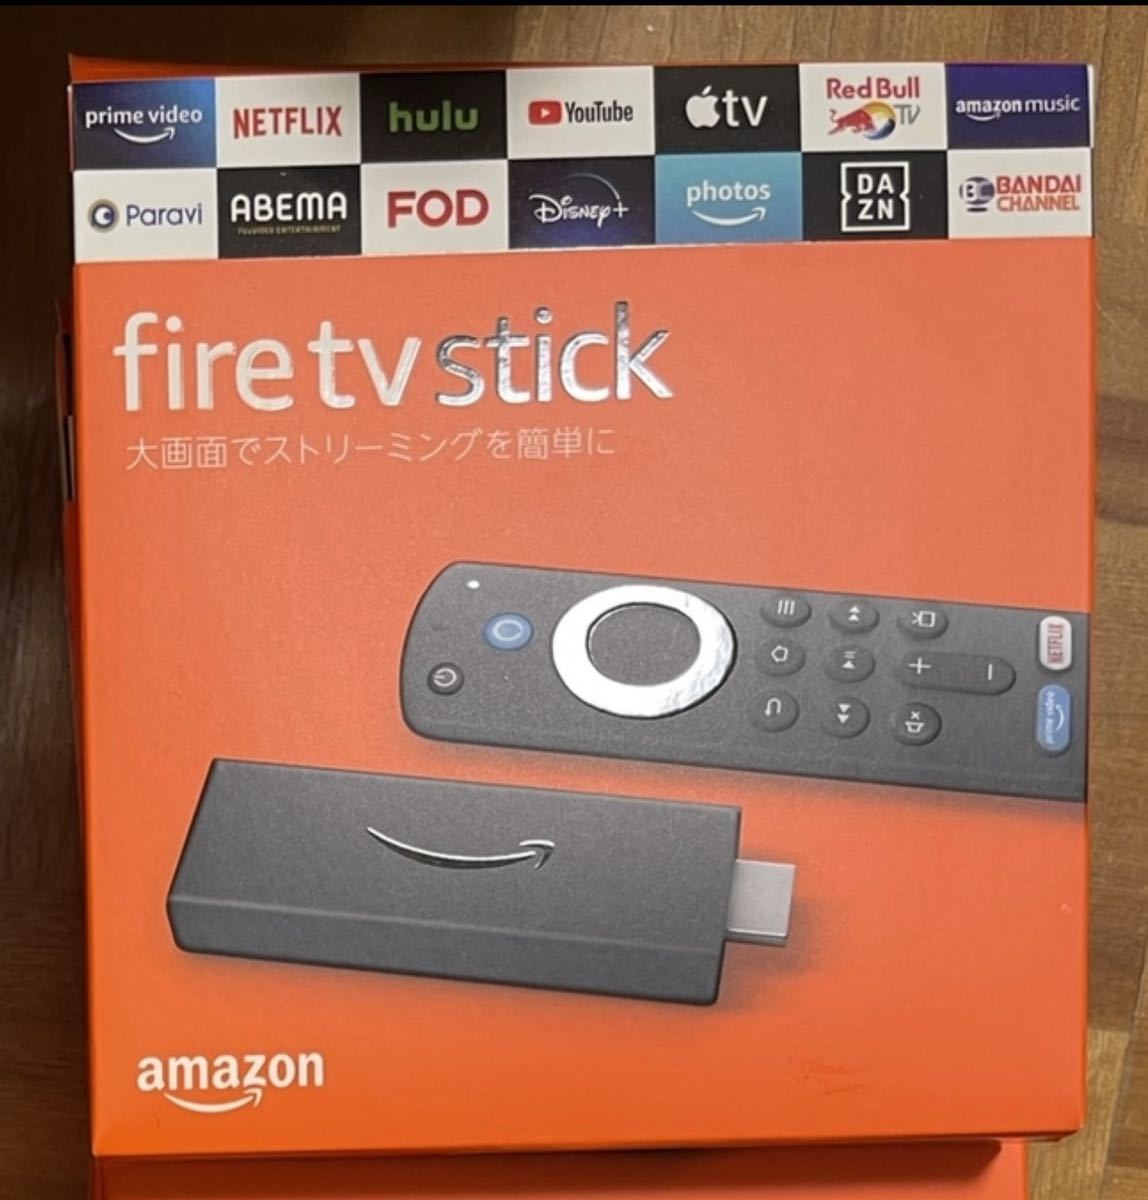 【新品未開封】Amazon Fire TV Stick - Alexa対応音声認識リモコン(第3世代)付属 | ストリーミングメディアプレーヤーの画像1